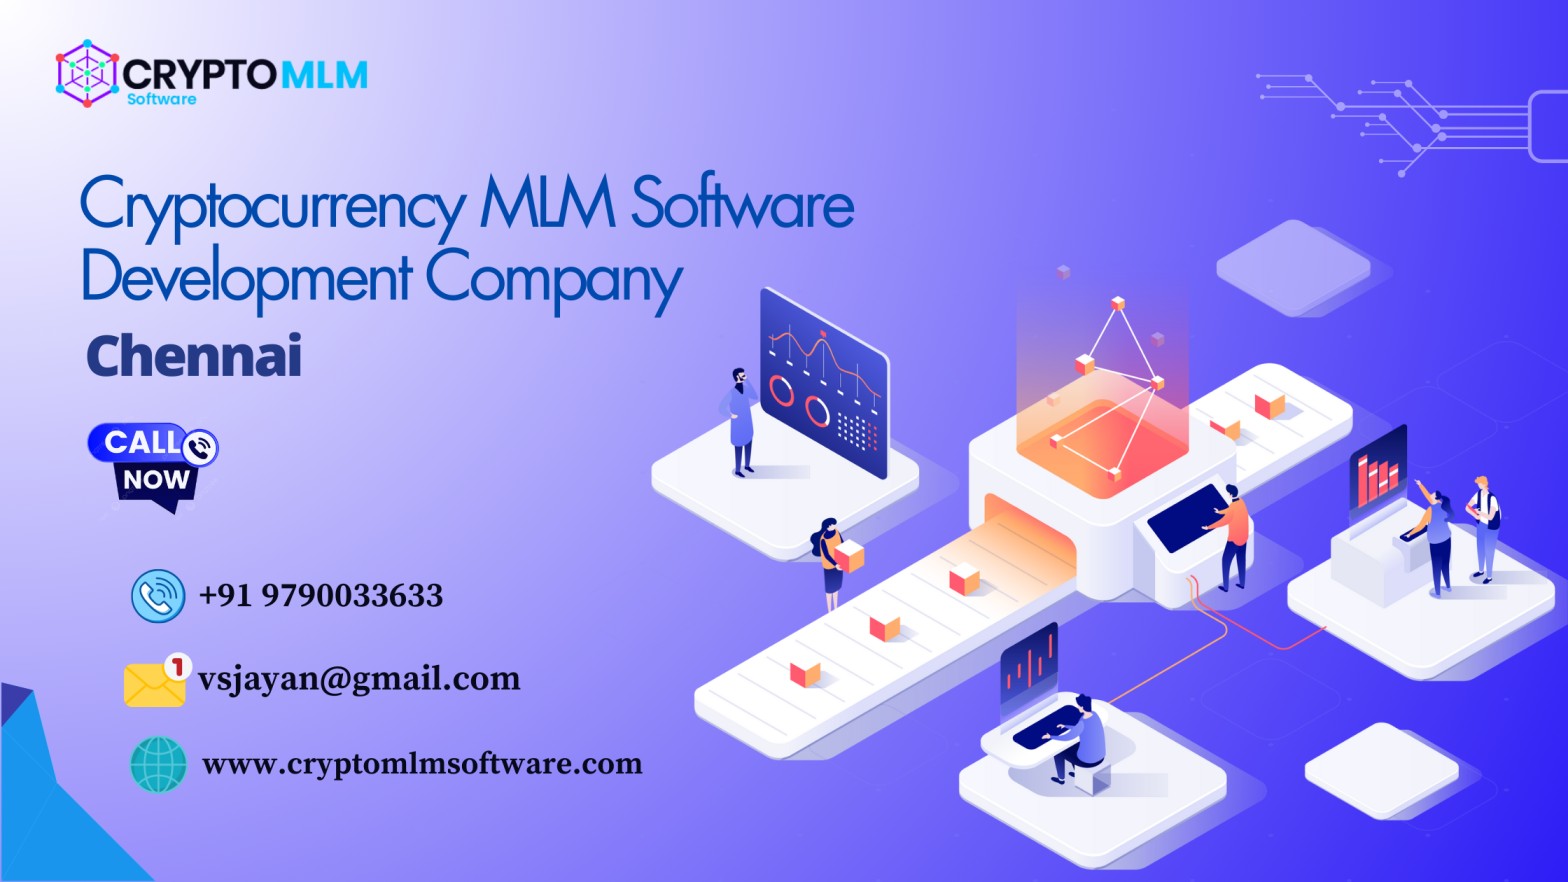 [ZJCRYPTOMLM

Cryptocurrency MIM Software
Development Company.
Chennai

[TYG
Llely)

+91 9790033633

1 vsjayan@gmail.com
) www.cryptom msoftw